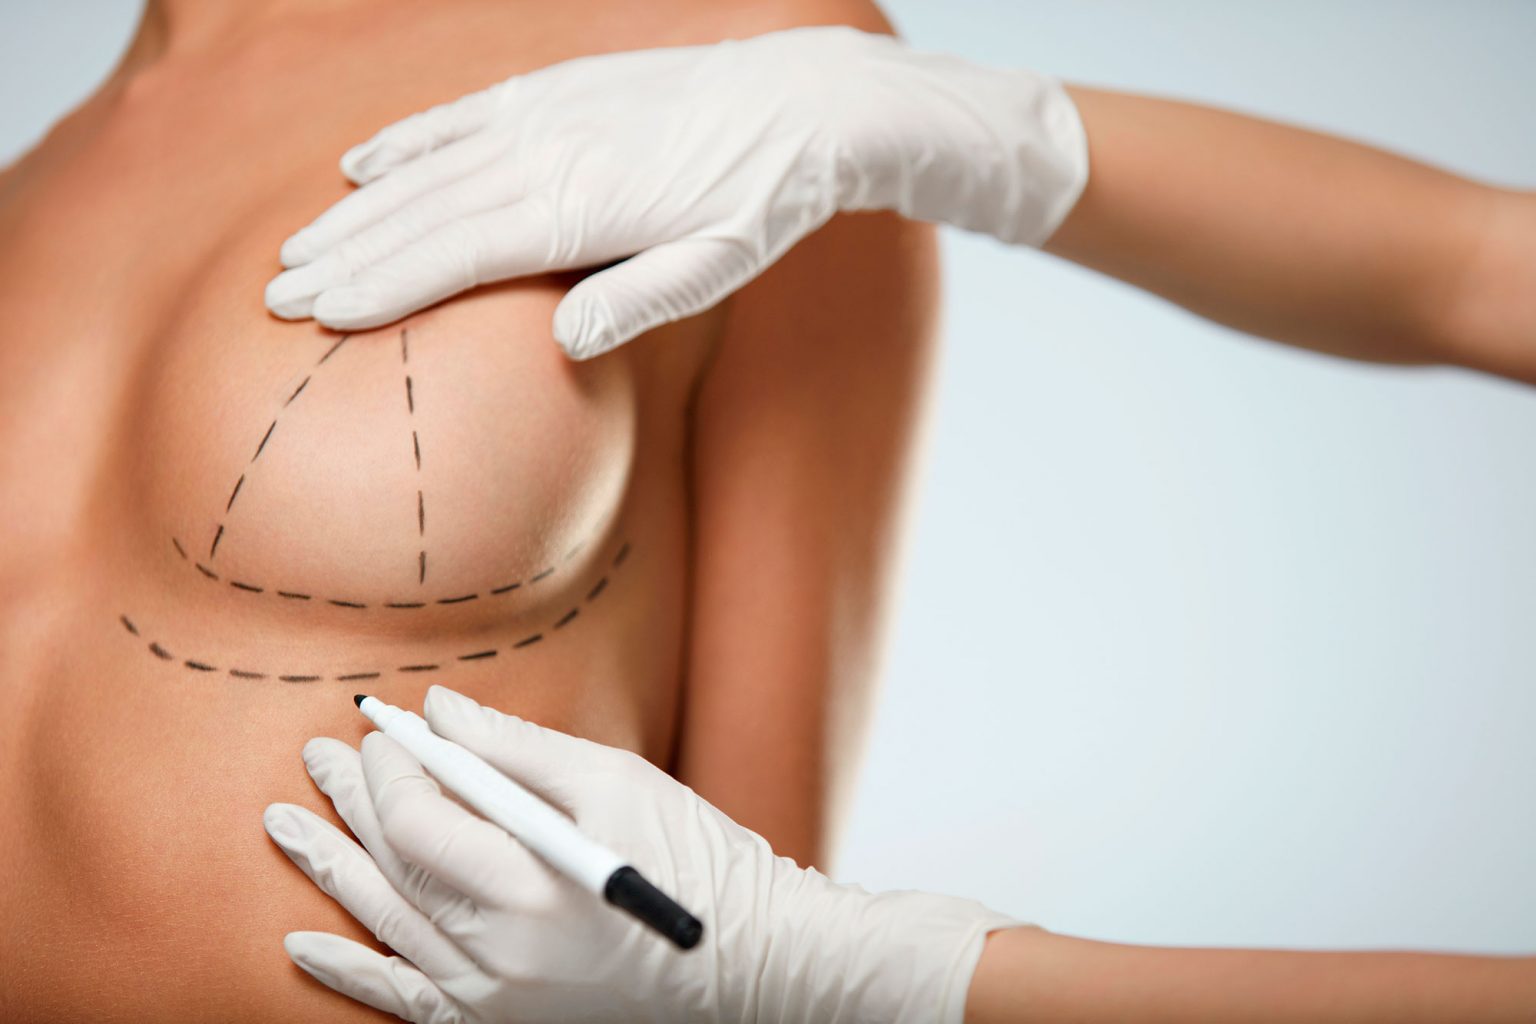 Médico demonstrando na mulher o desenho da protese de mama no corpo da paciente com linhas em caneta